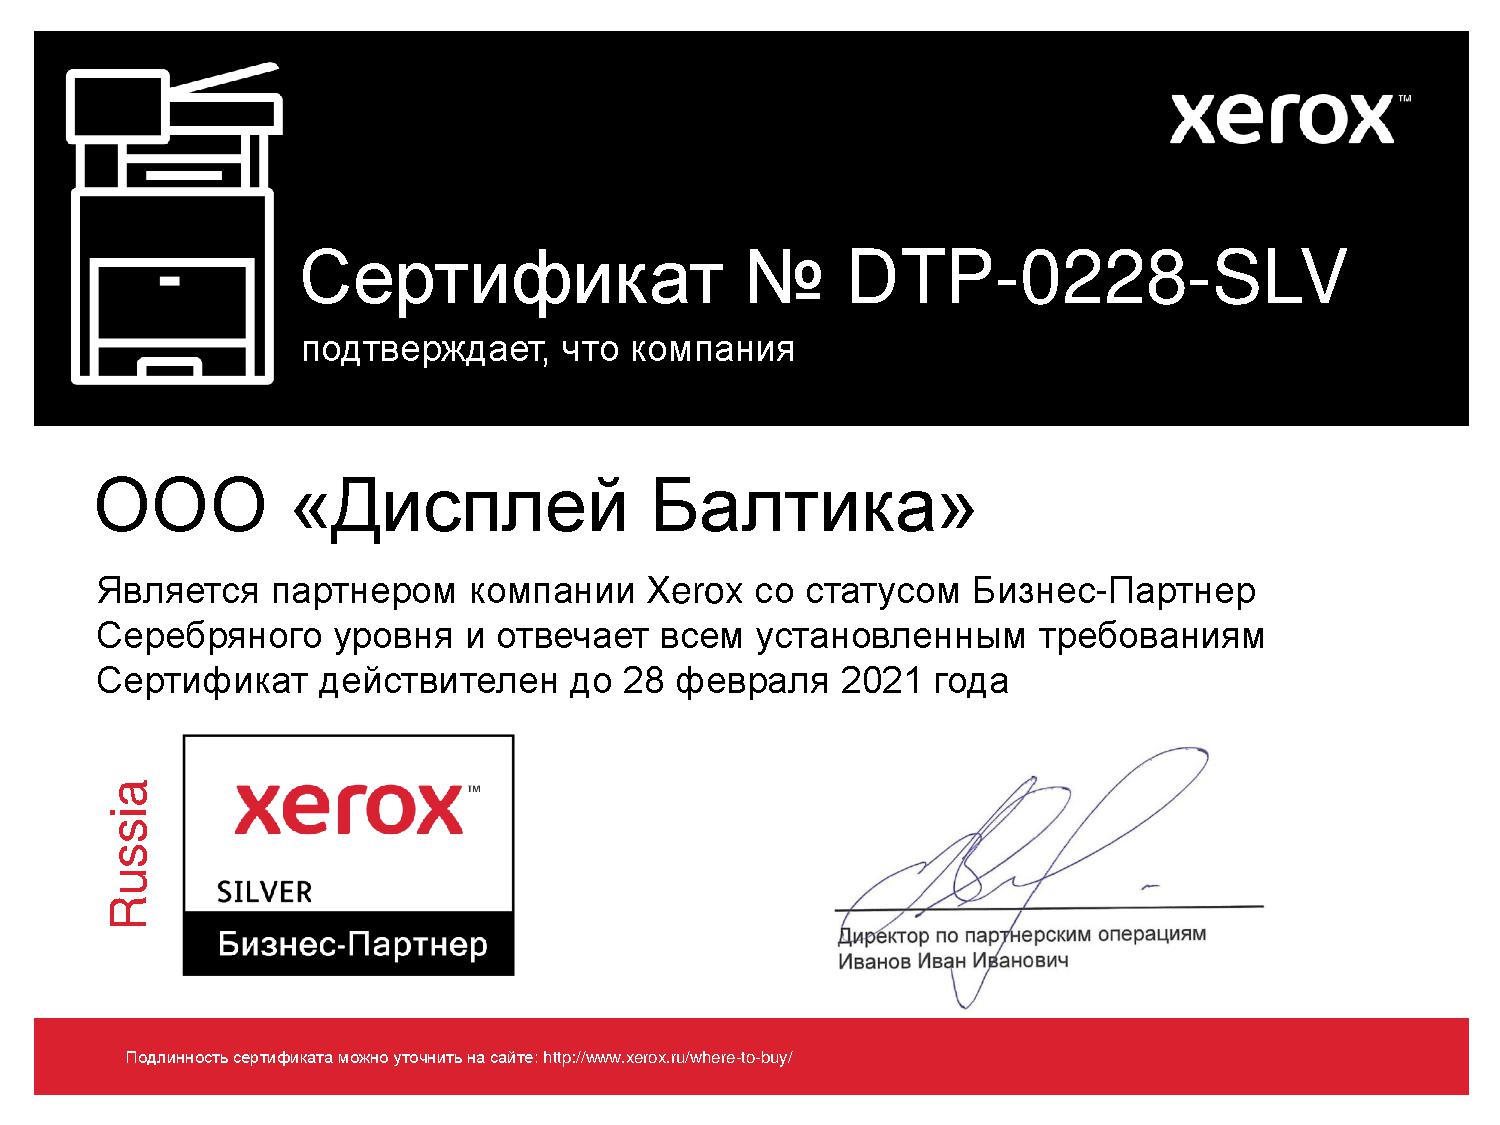 Компания Display Group в очередной раз продлила статус партнера Xerox на 2020-21 год. 